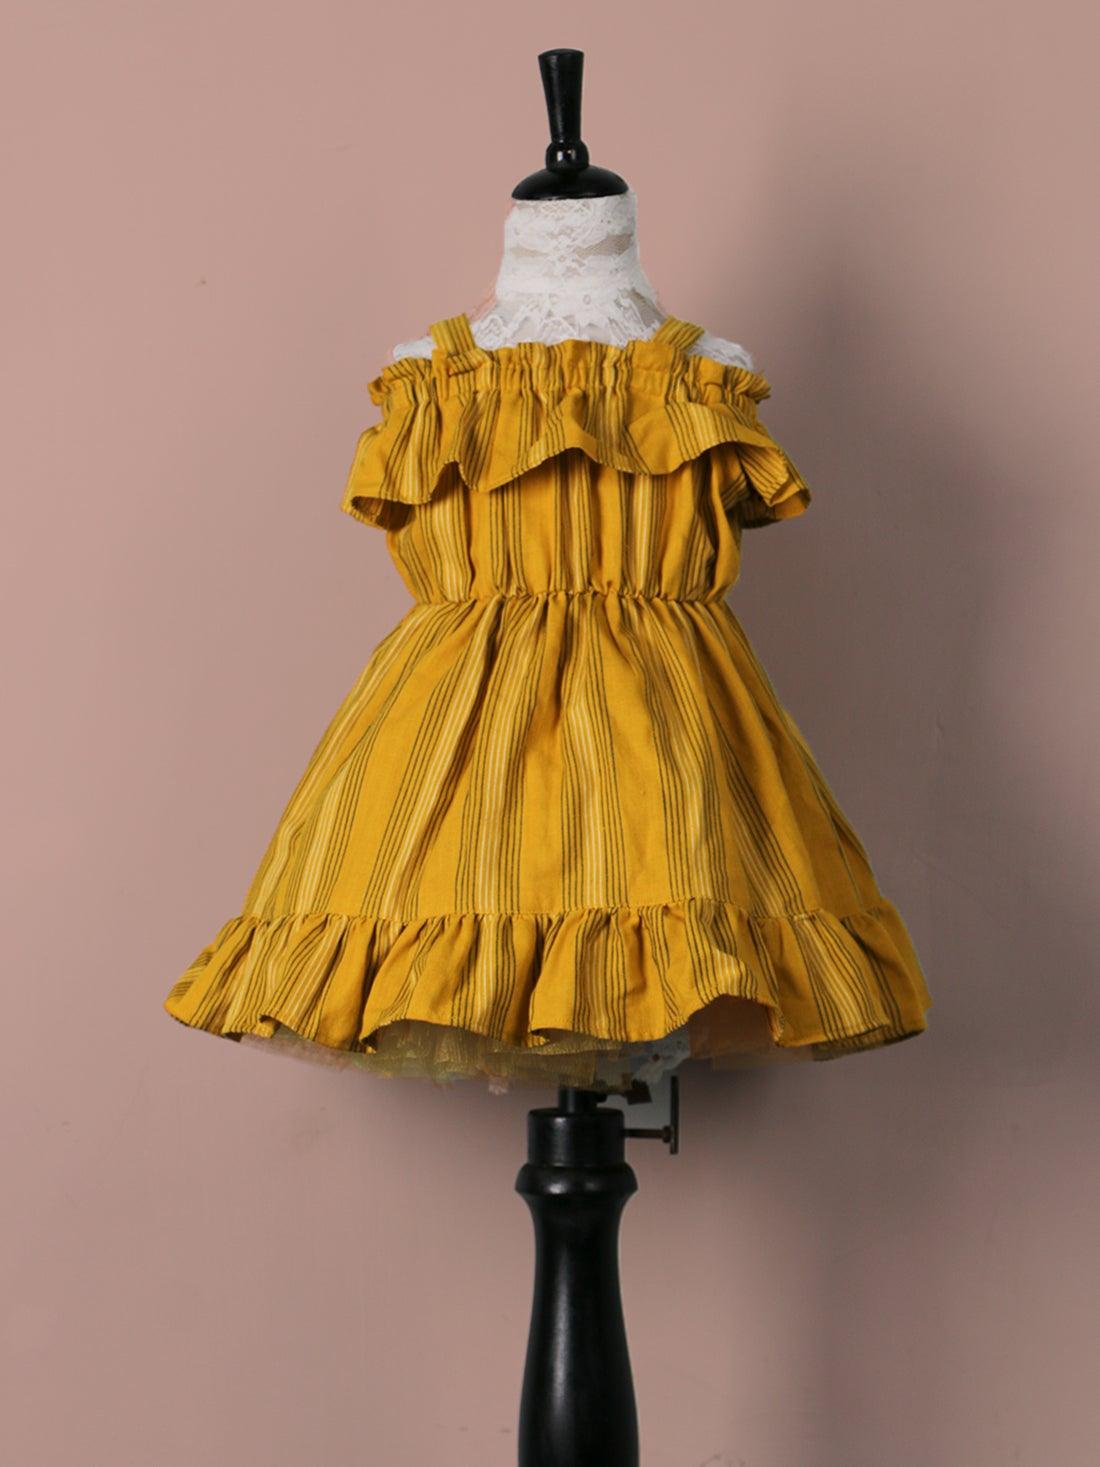 Handloom Woven Mustard yellow Girl’s Fit & Flare Dress WeaversKnot 